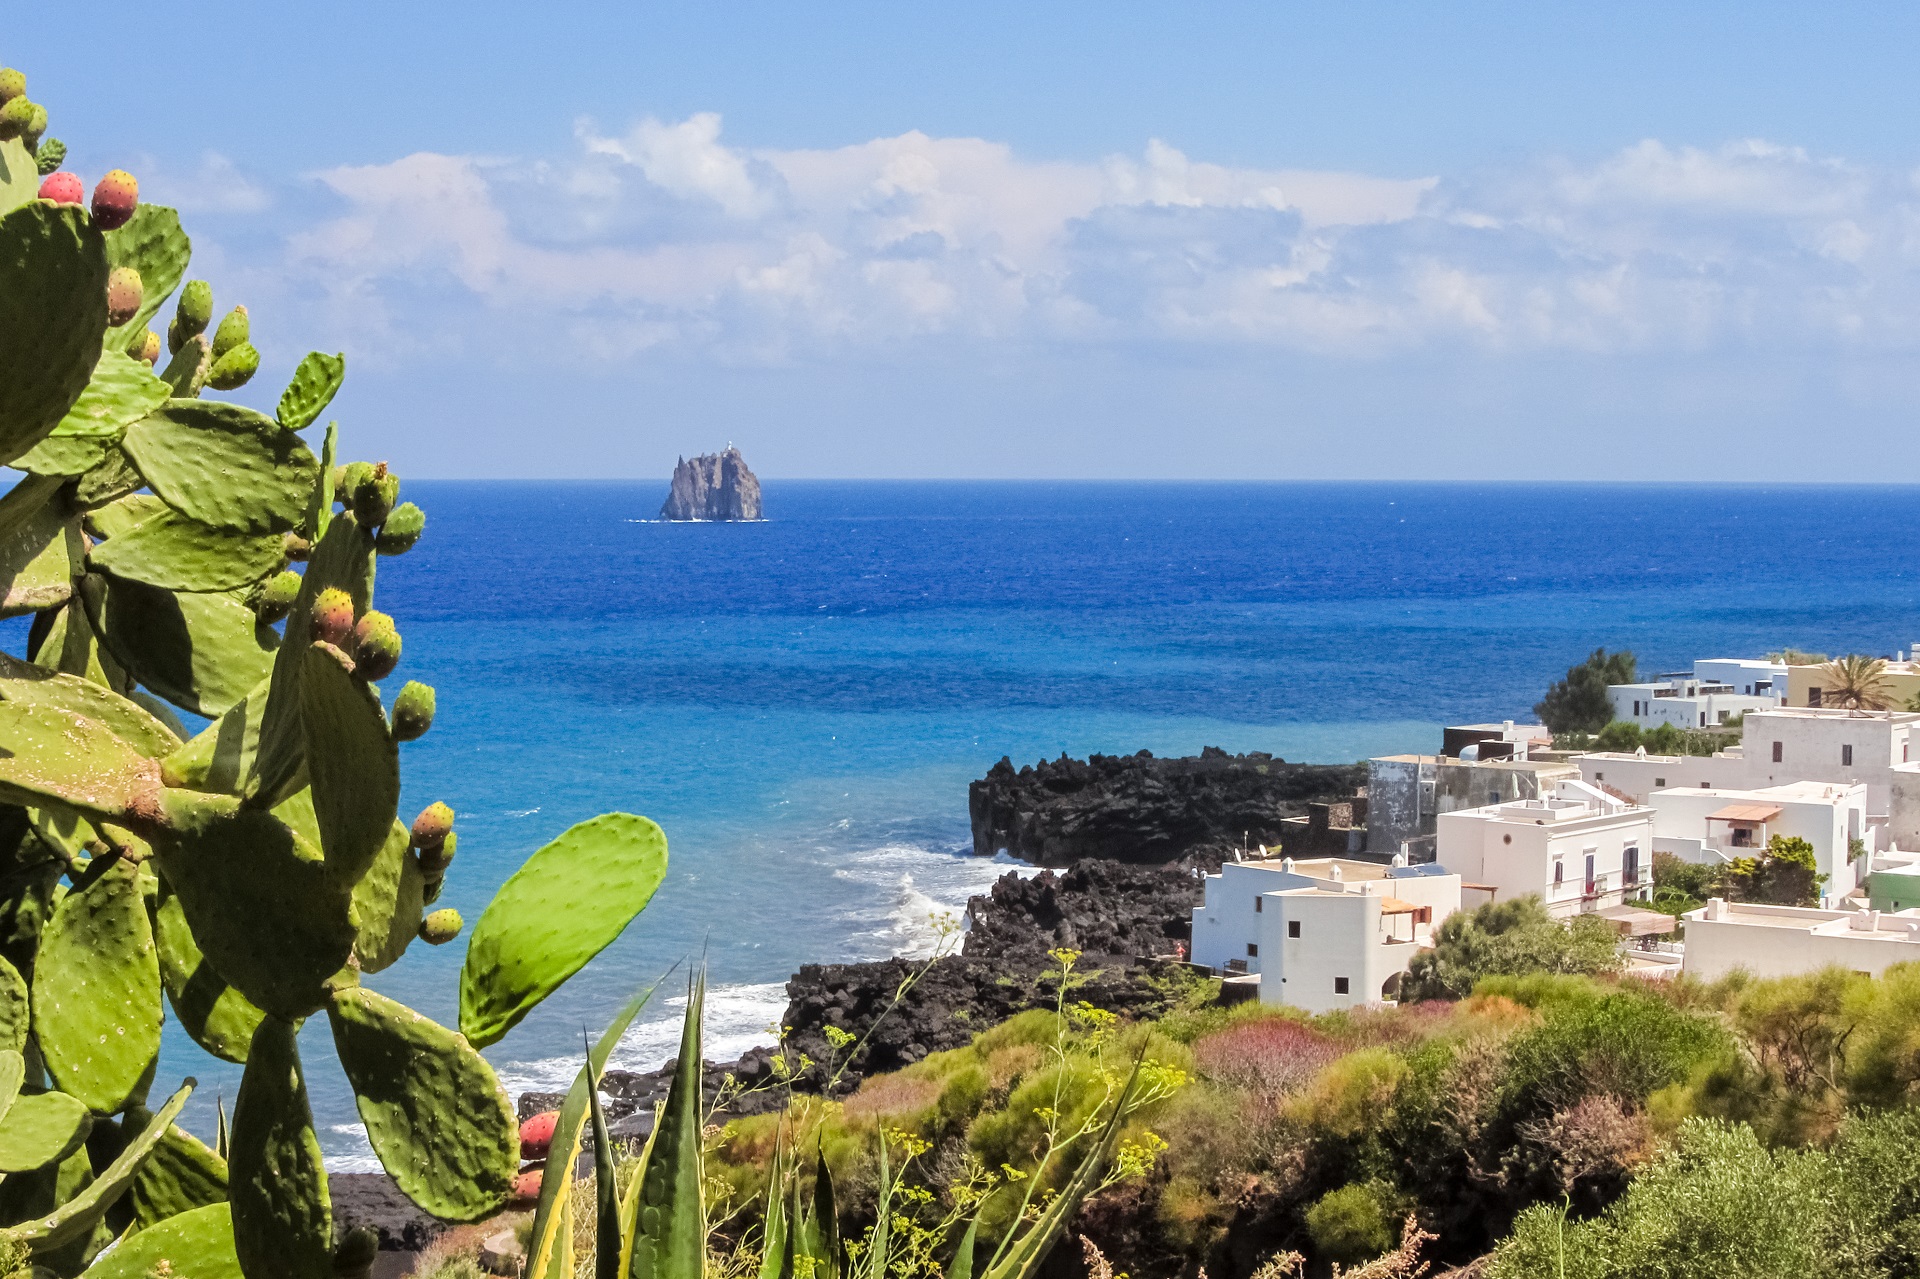 Die Küste der Insel Stromboli ist geprägt vom Kontrast zwischen schwarzem Vulkangestein, weißen Häusern und dem türkisen Meer.